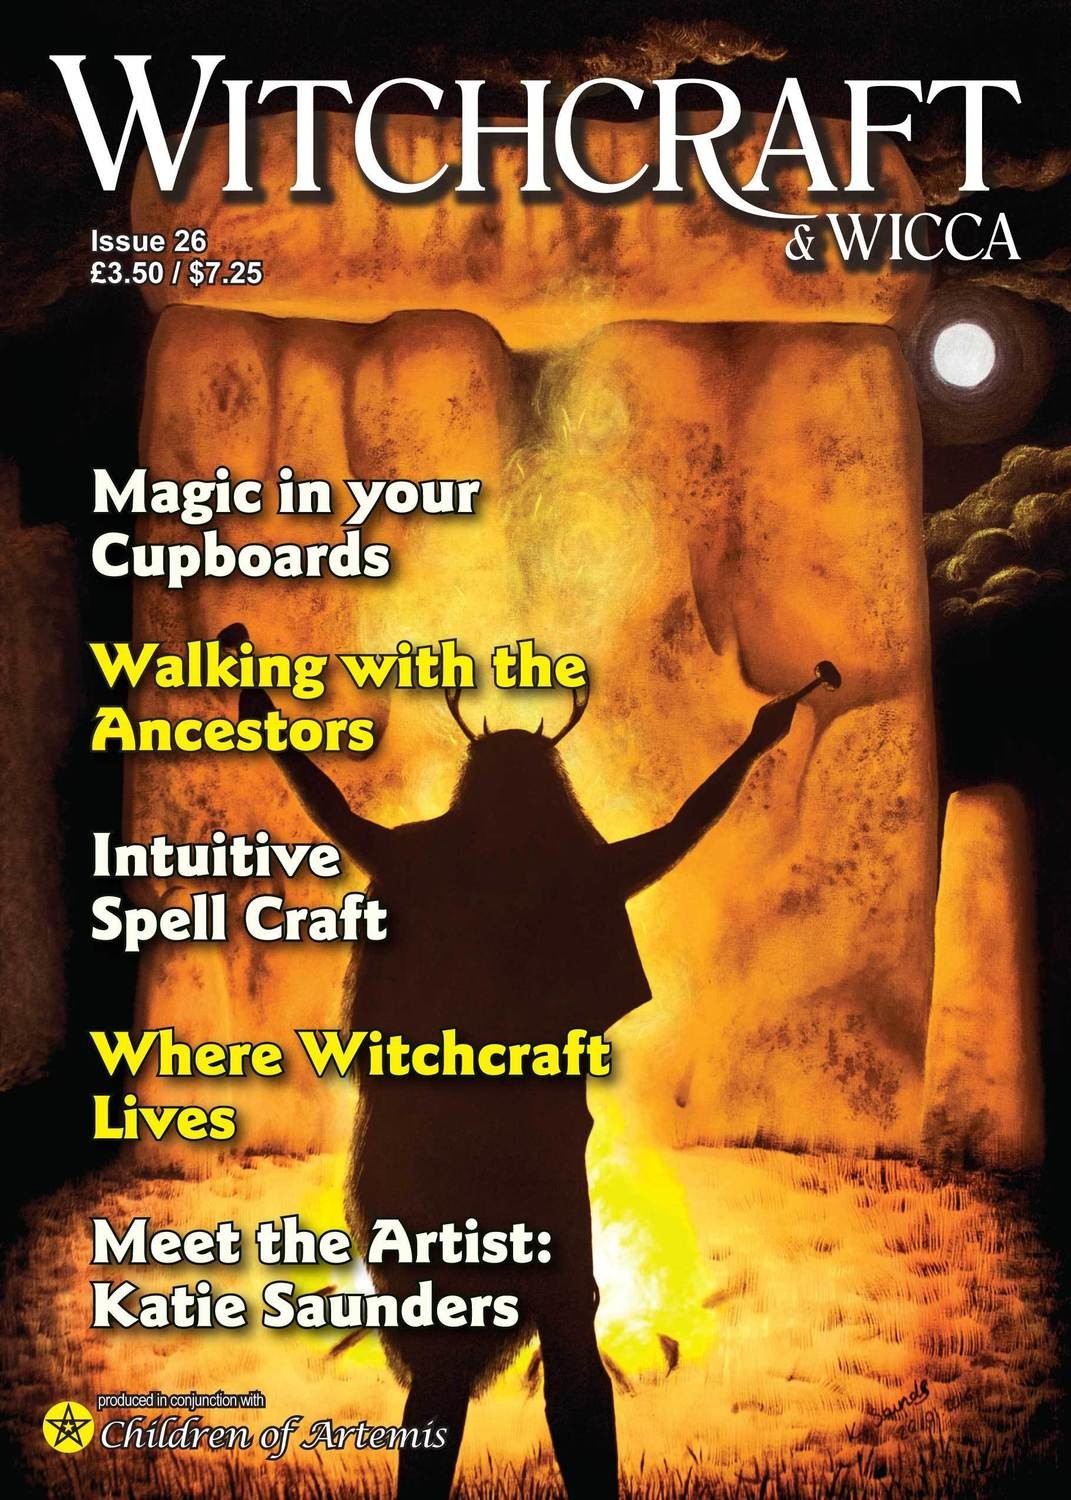 Witchcraft & Wicca Magazine Issue 26